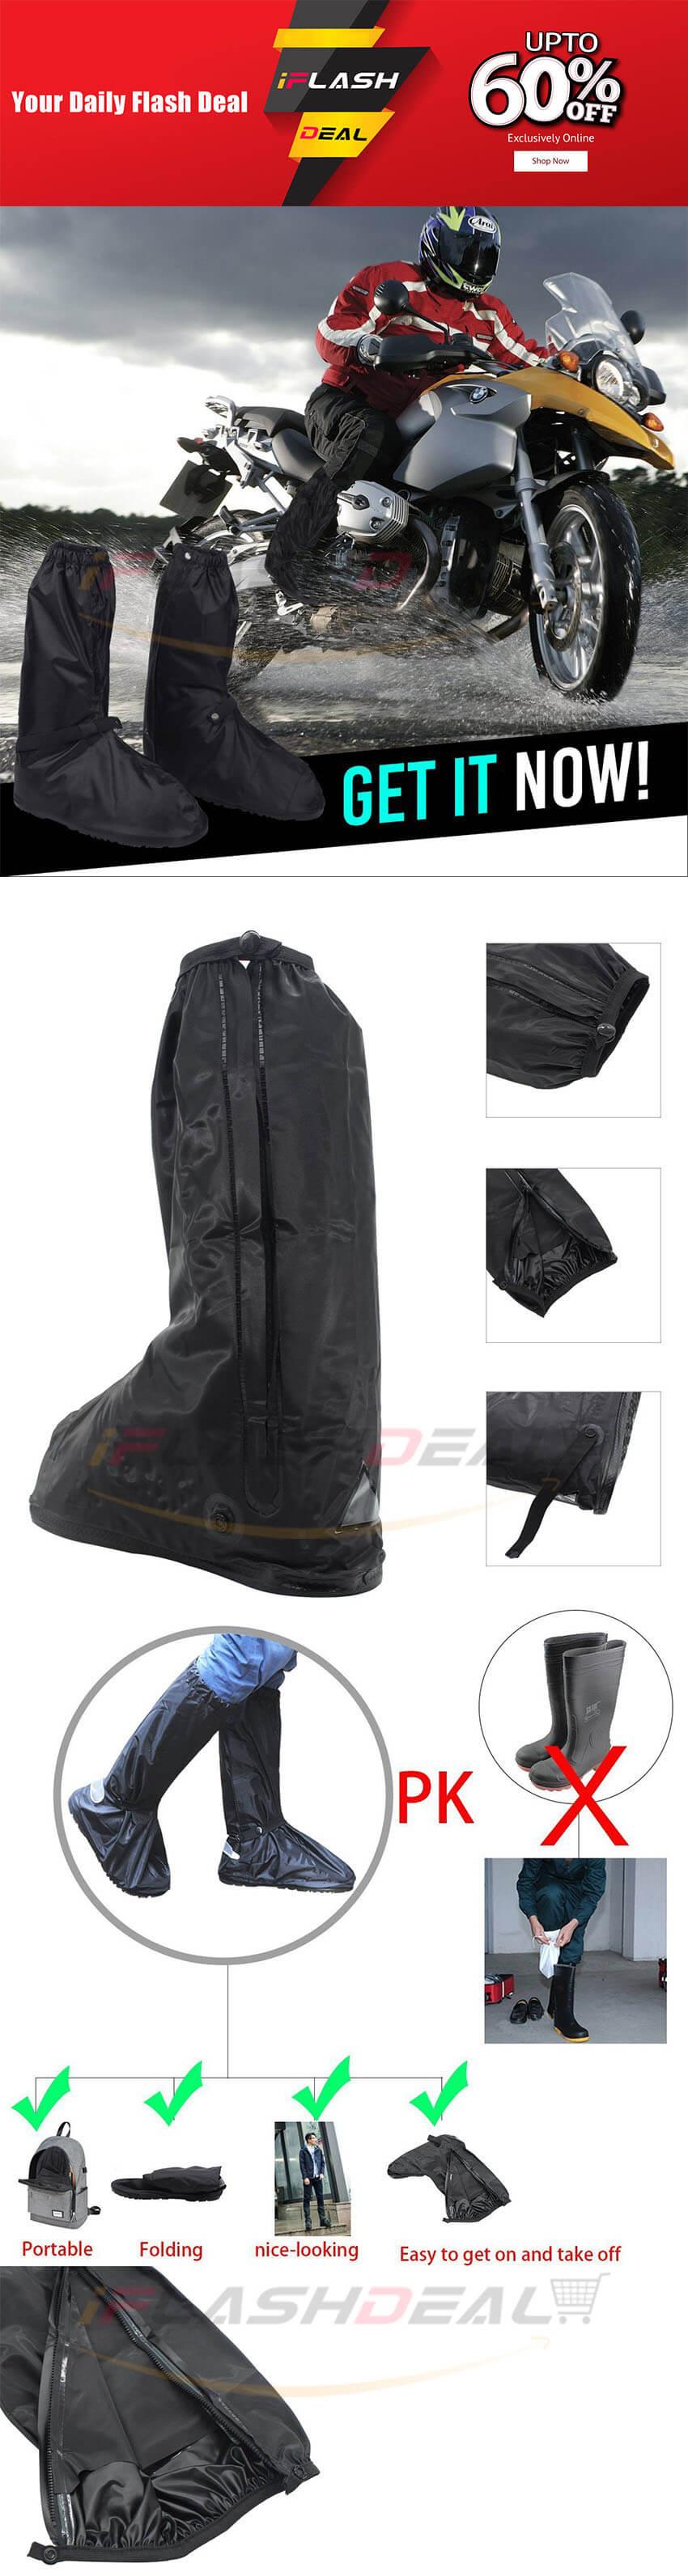 non slip waterproof boots